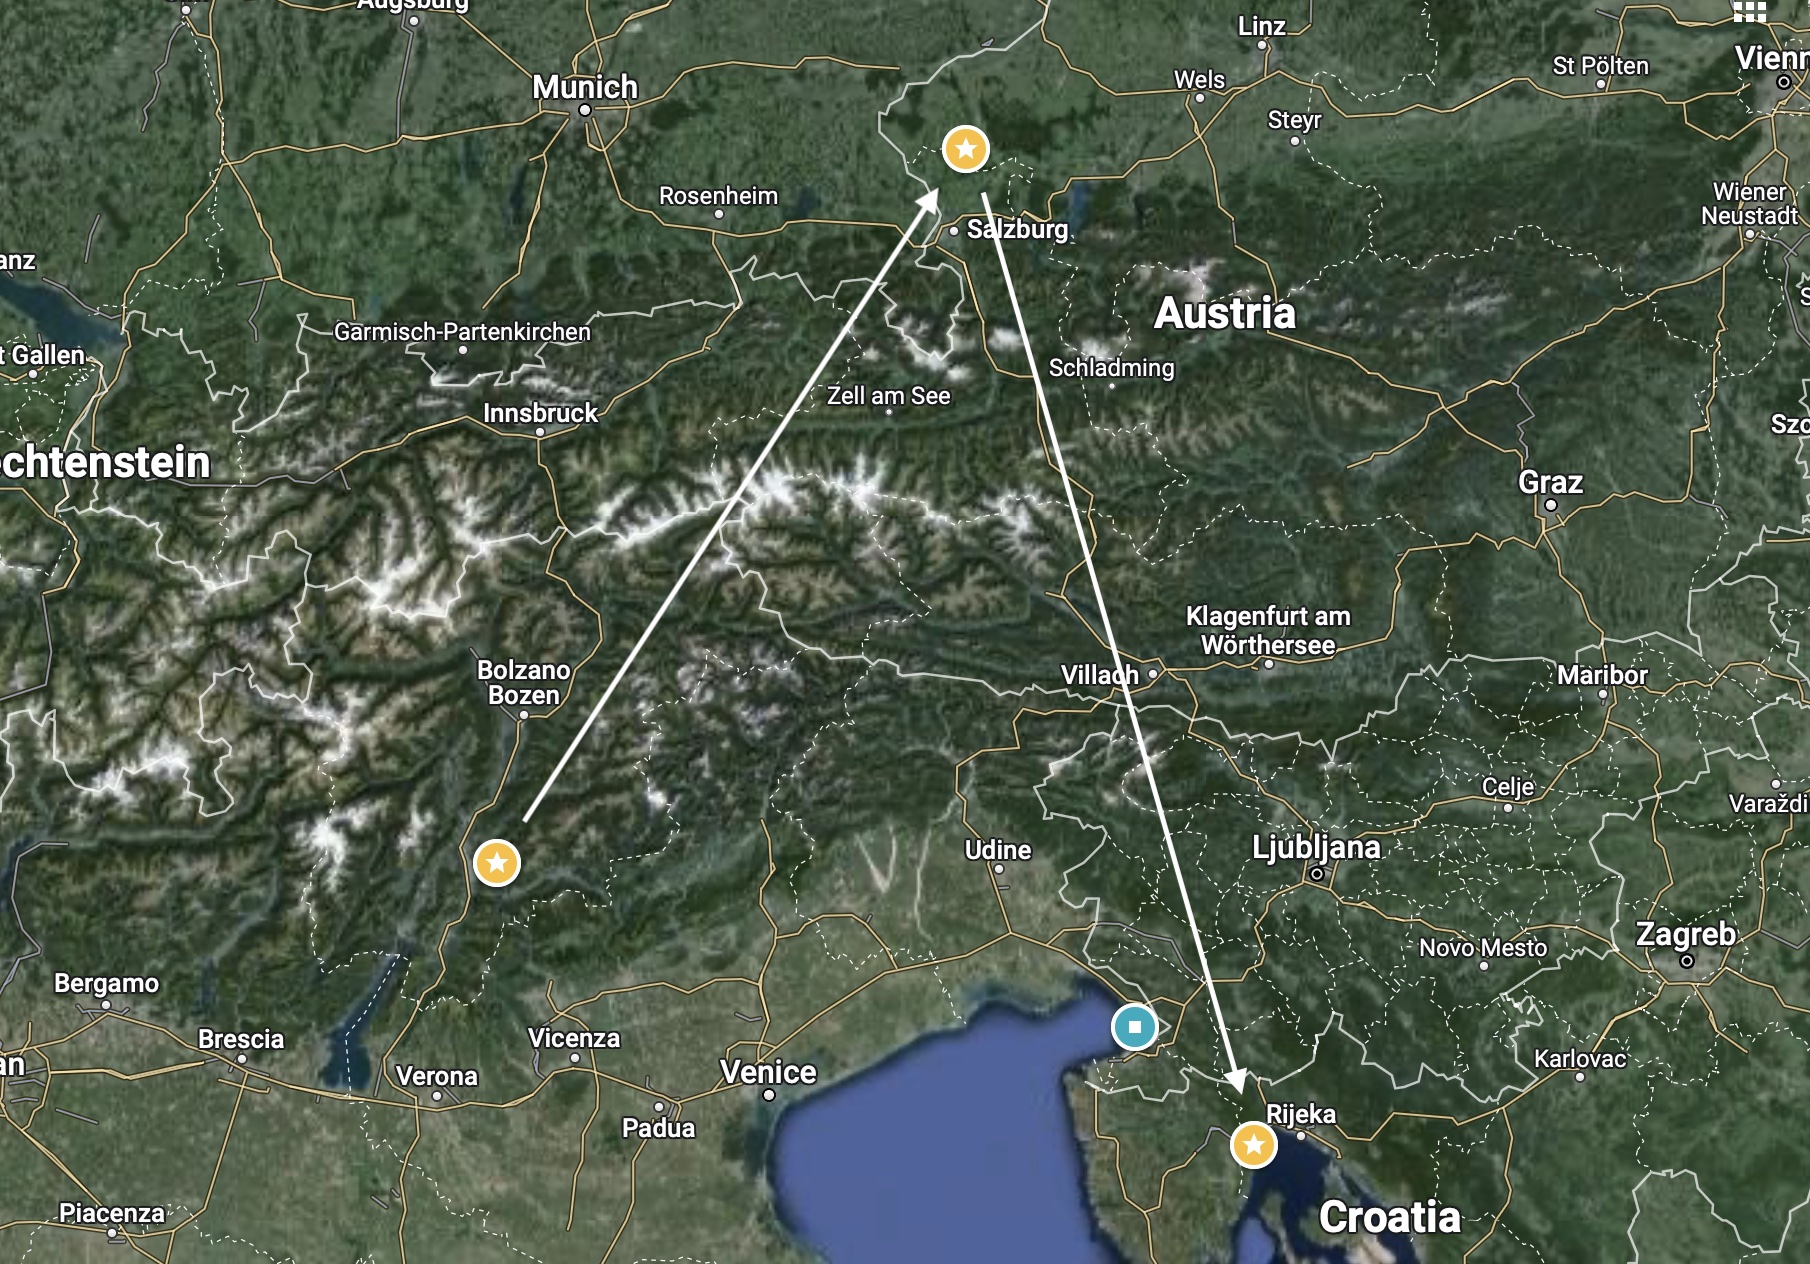 Alpe Adria Region Snipe Series Image